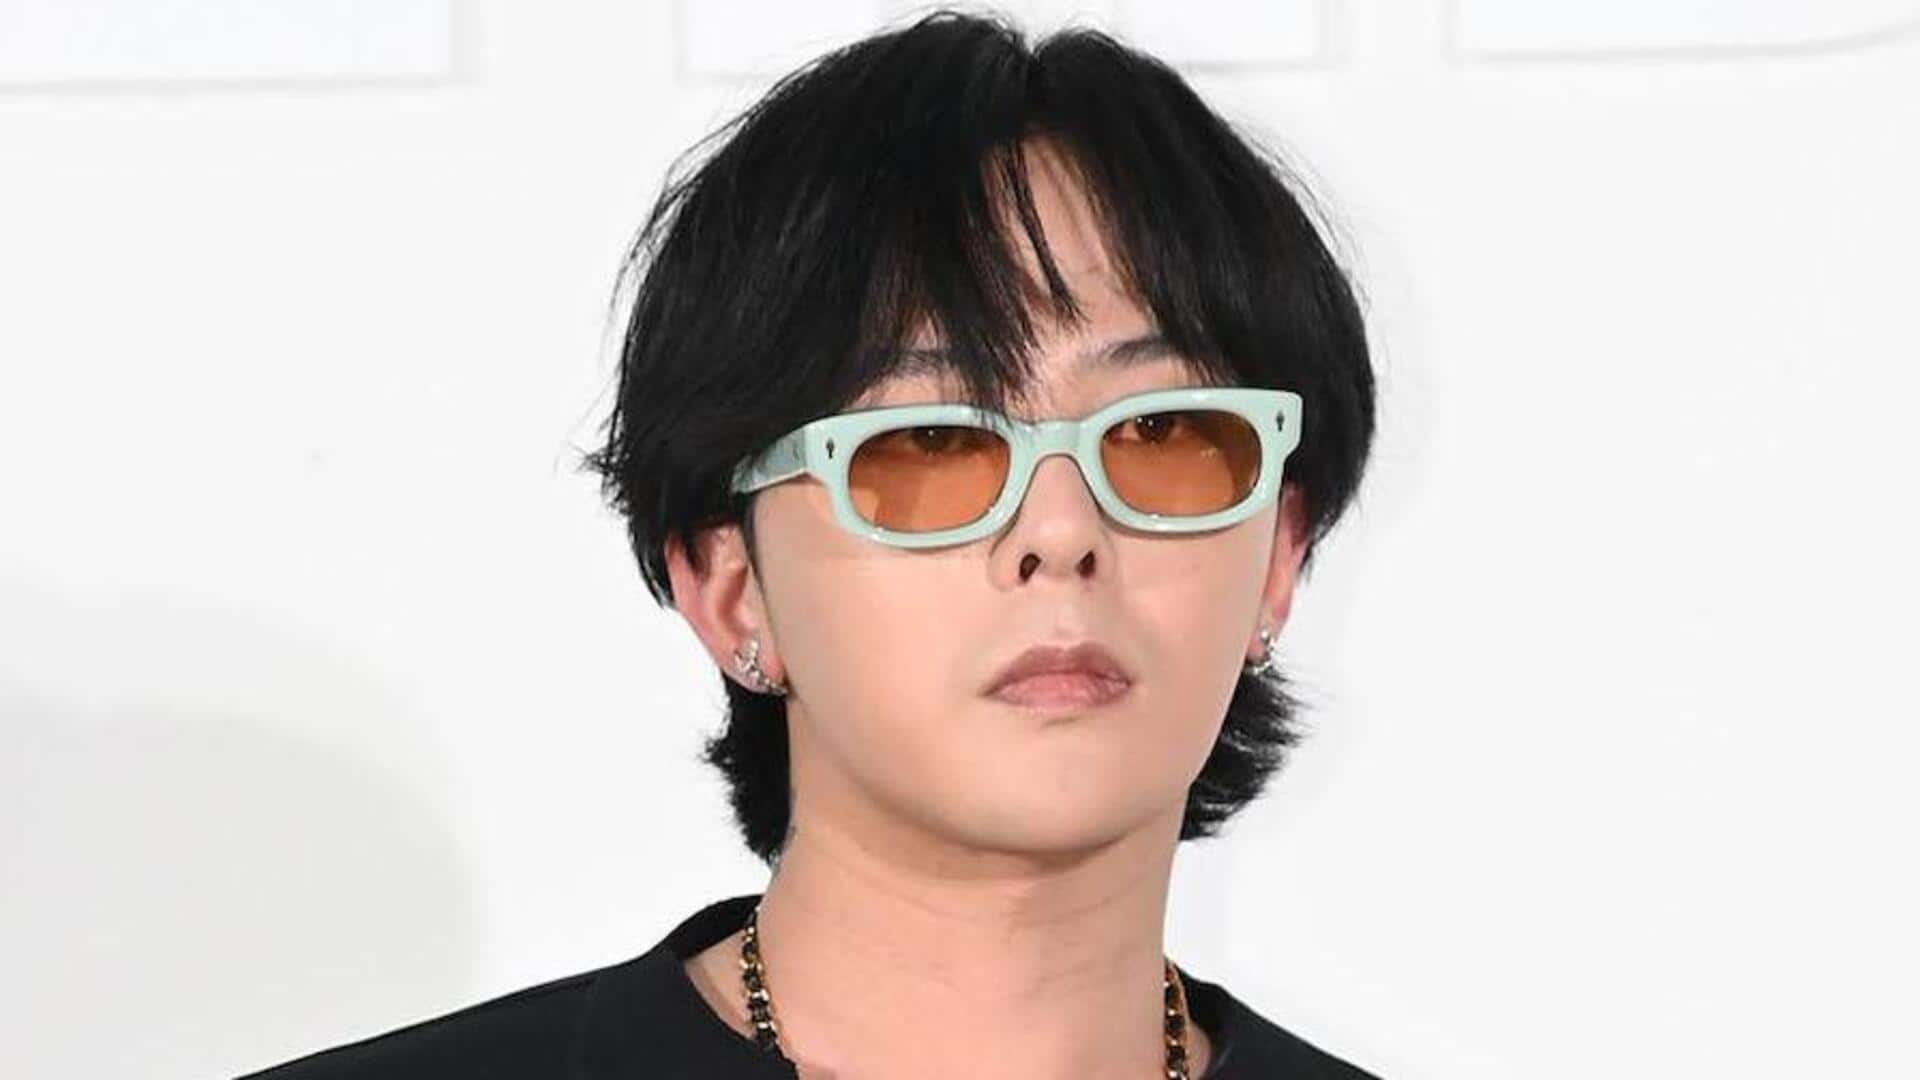 BIGBANG's G-Dragon voluntarily appears for interrogation, denies drug crime allegations